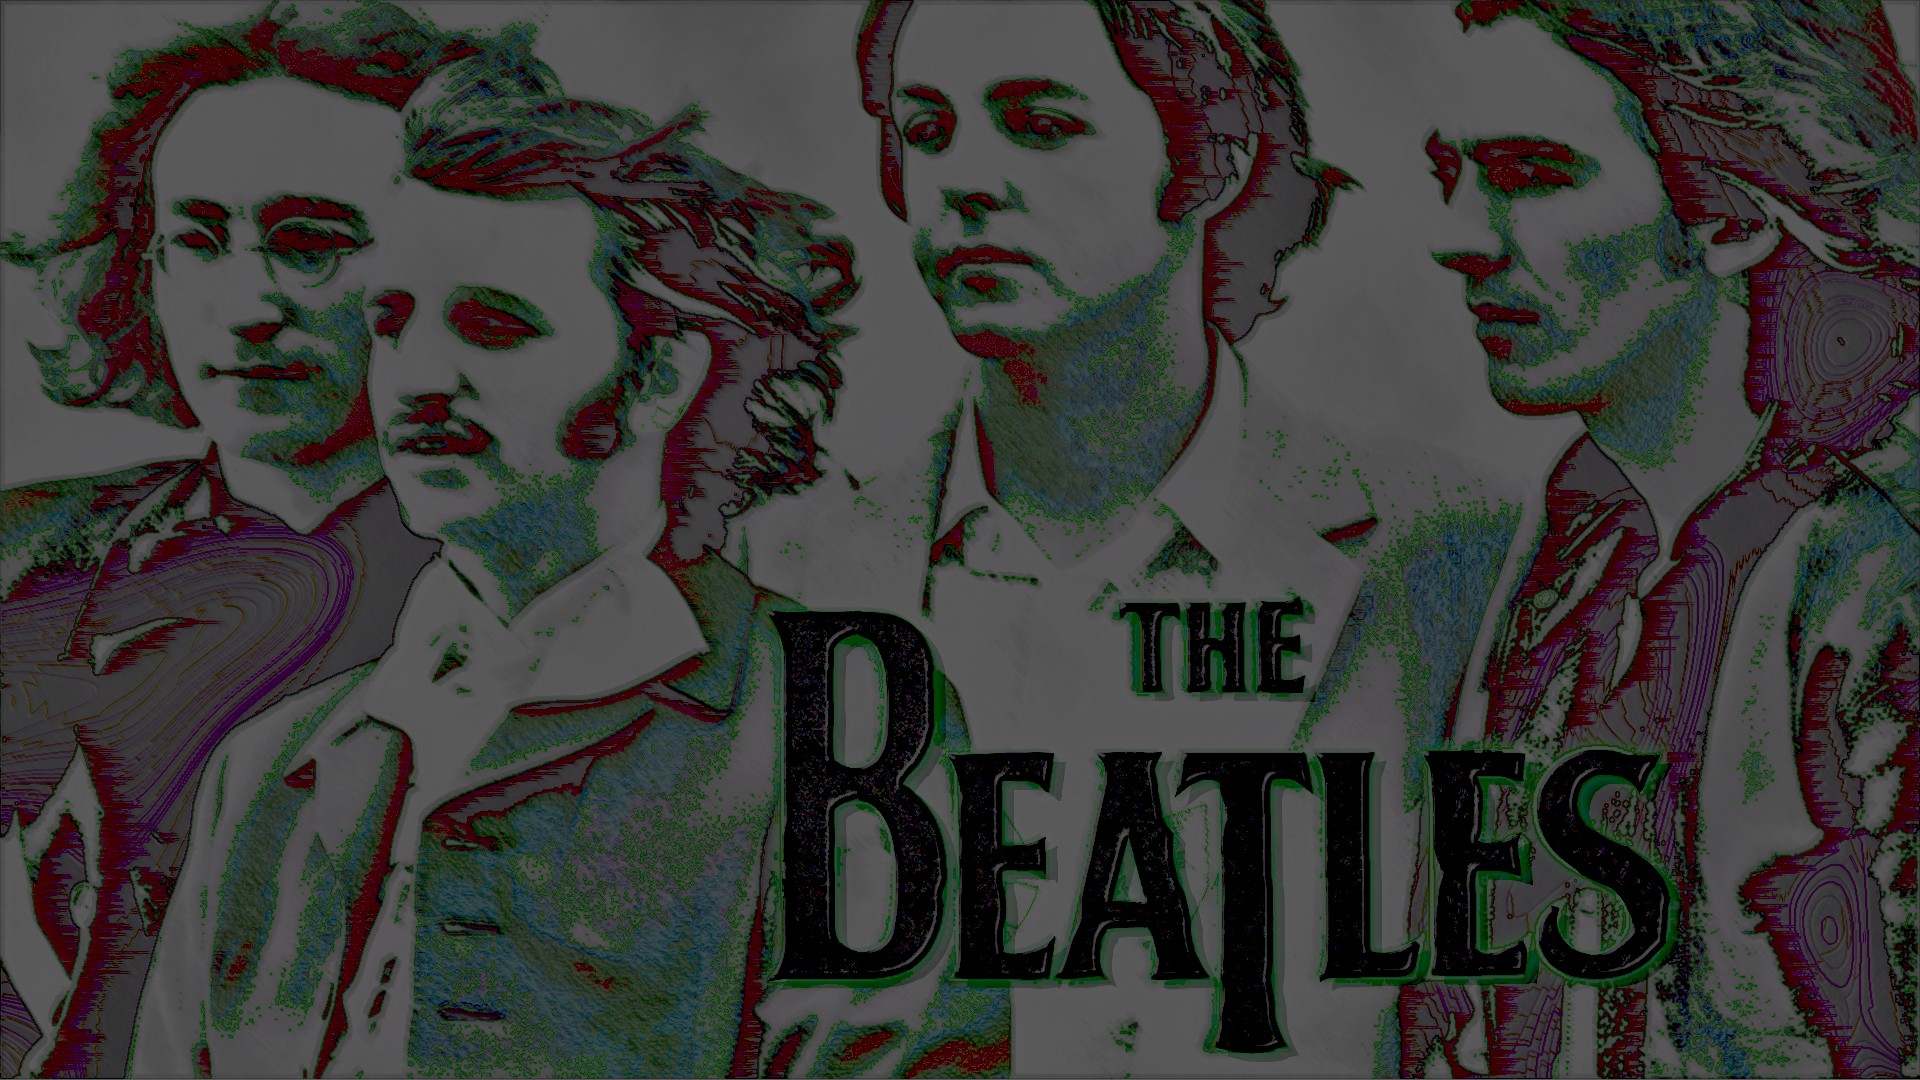 General 1920x1080 The Beatles music artwork band logo men band Ringo Starr Paul McCartney George Harrison John Lennon